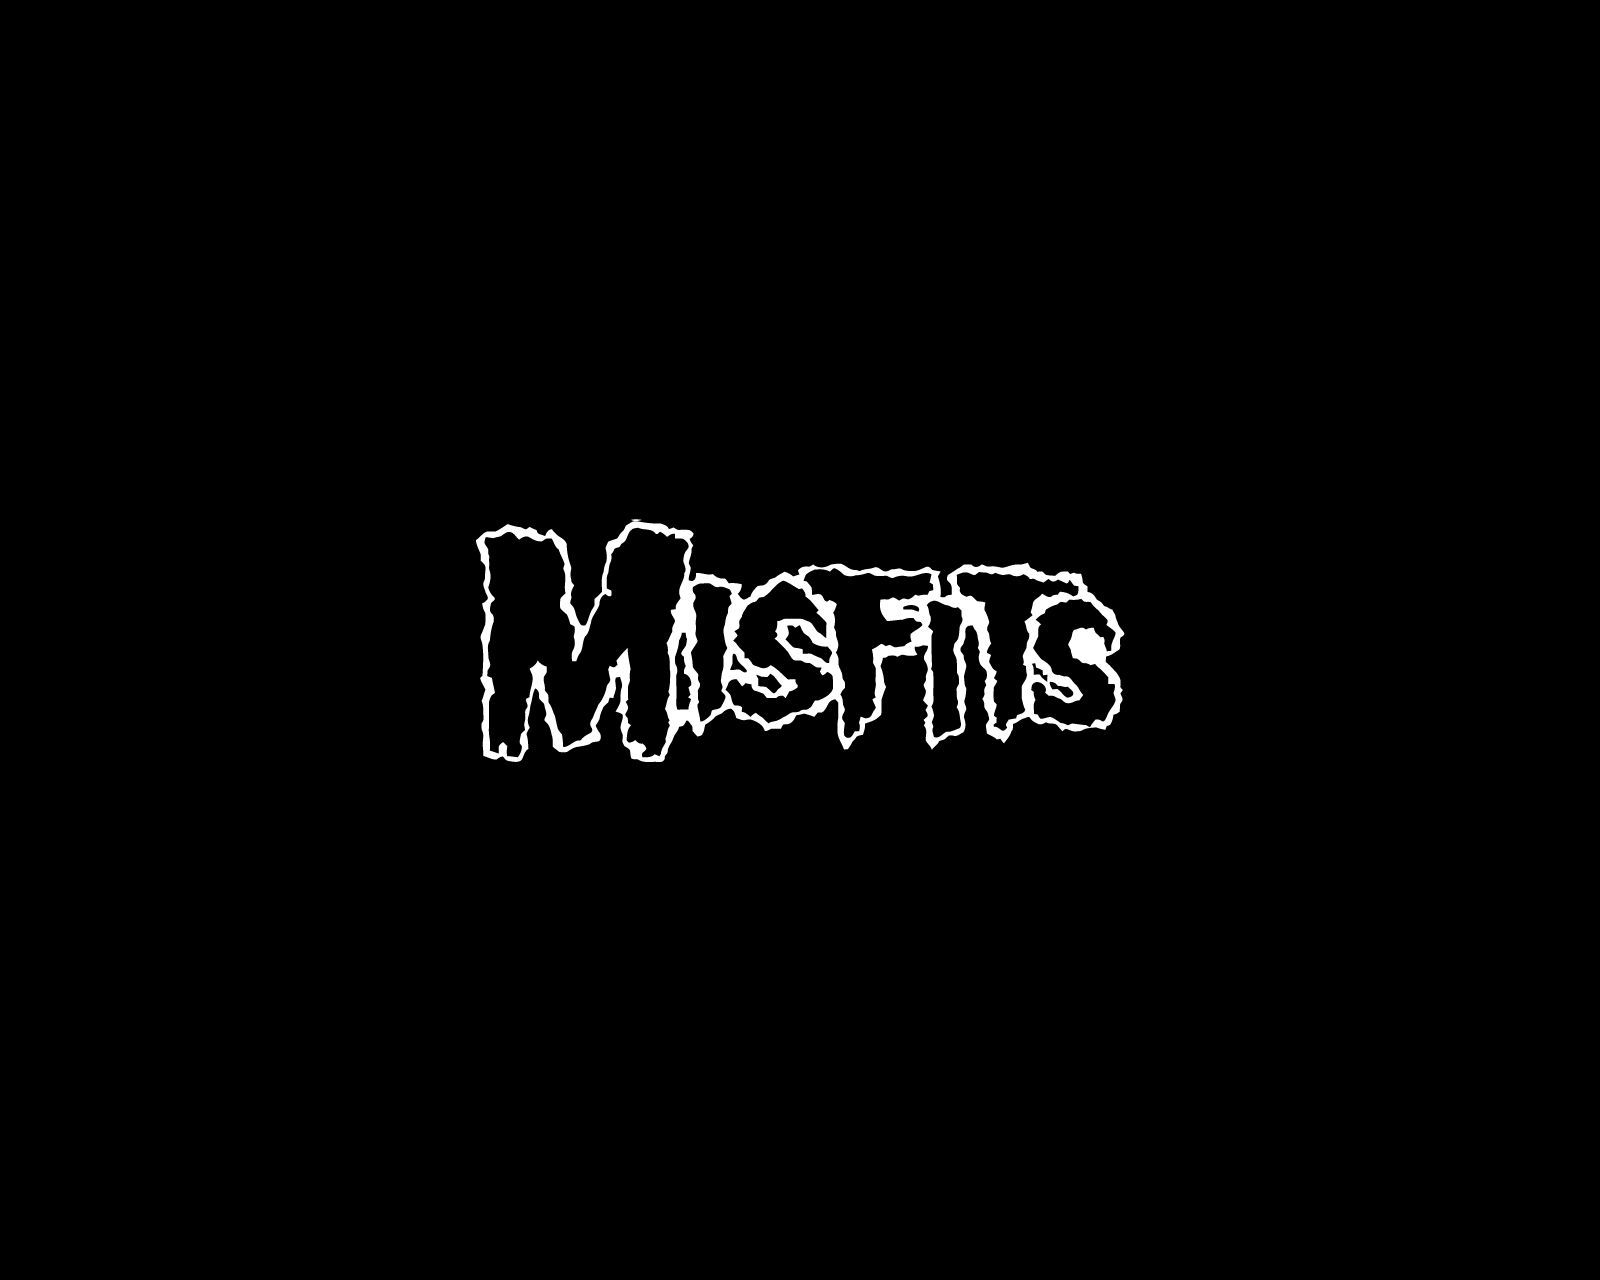 Misfits logo and wallpaper | Band logos - Rock band logos, metal ...